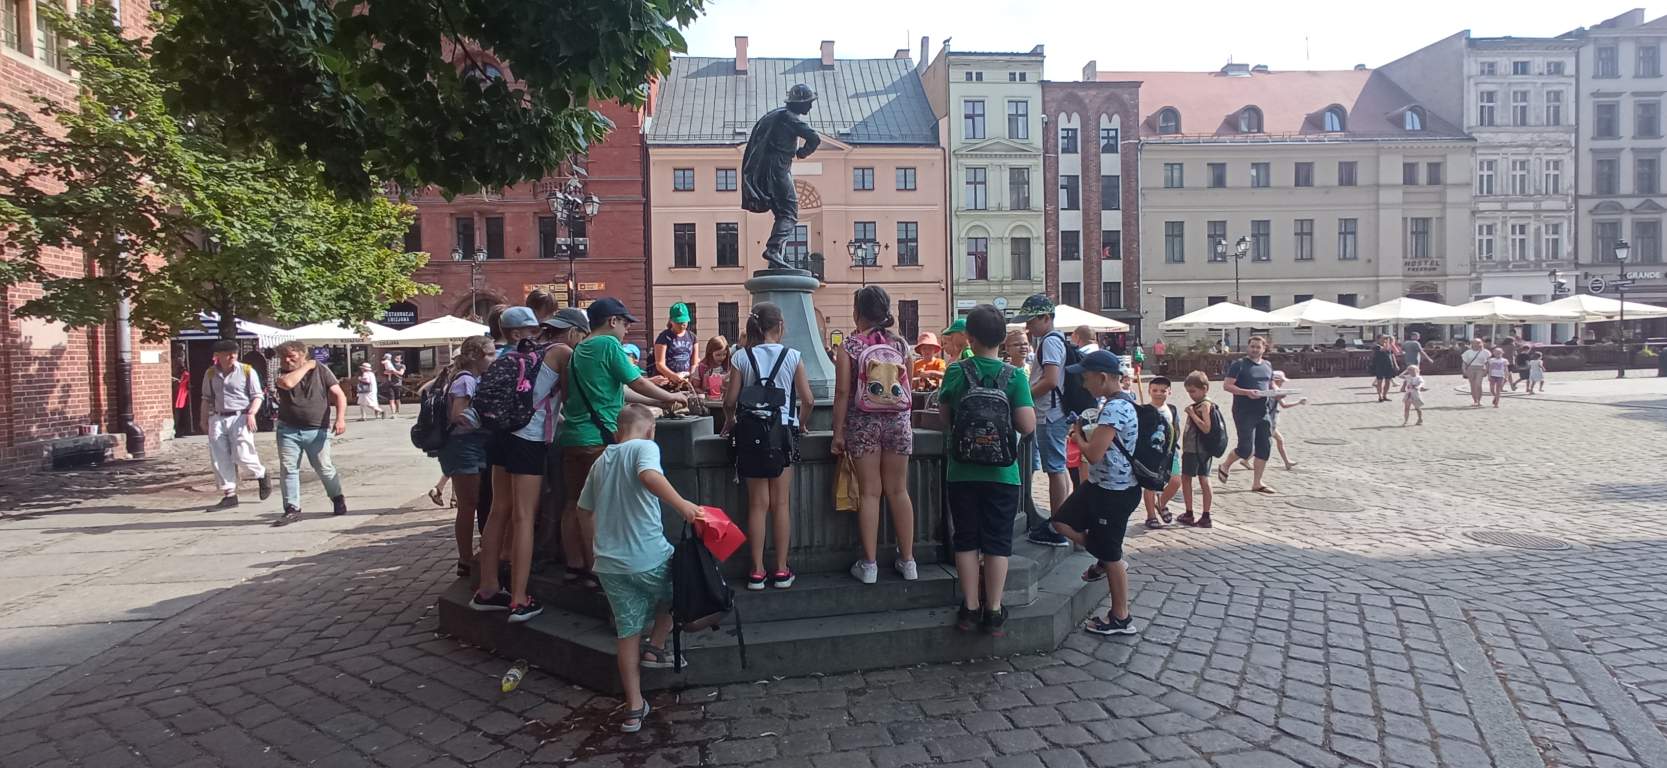 Fotografia przedstawia uczestników zajęć przy fontannie na Starówce w Toruniu. W tle widać starówkę